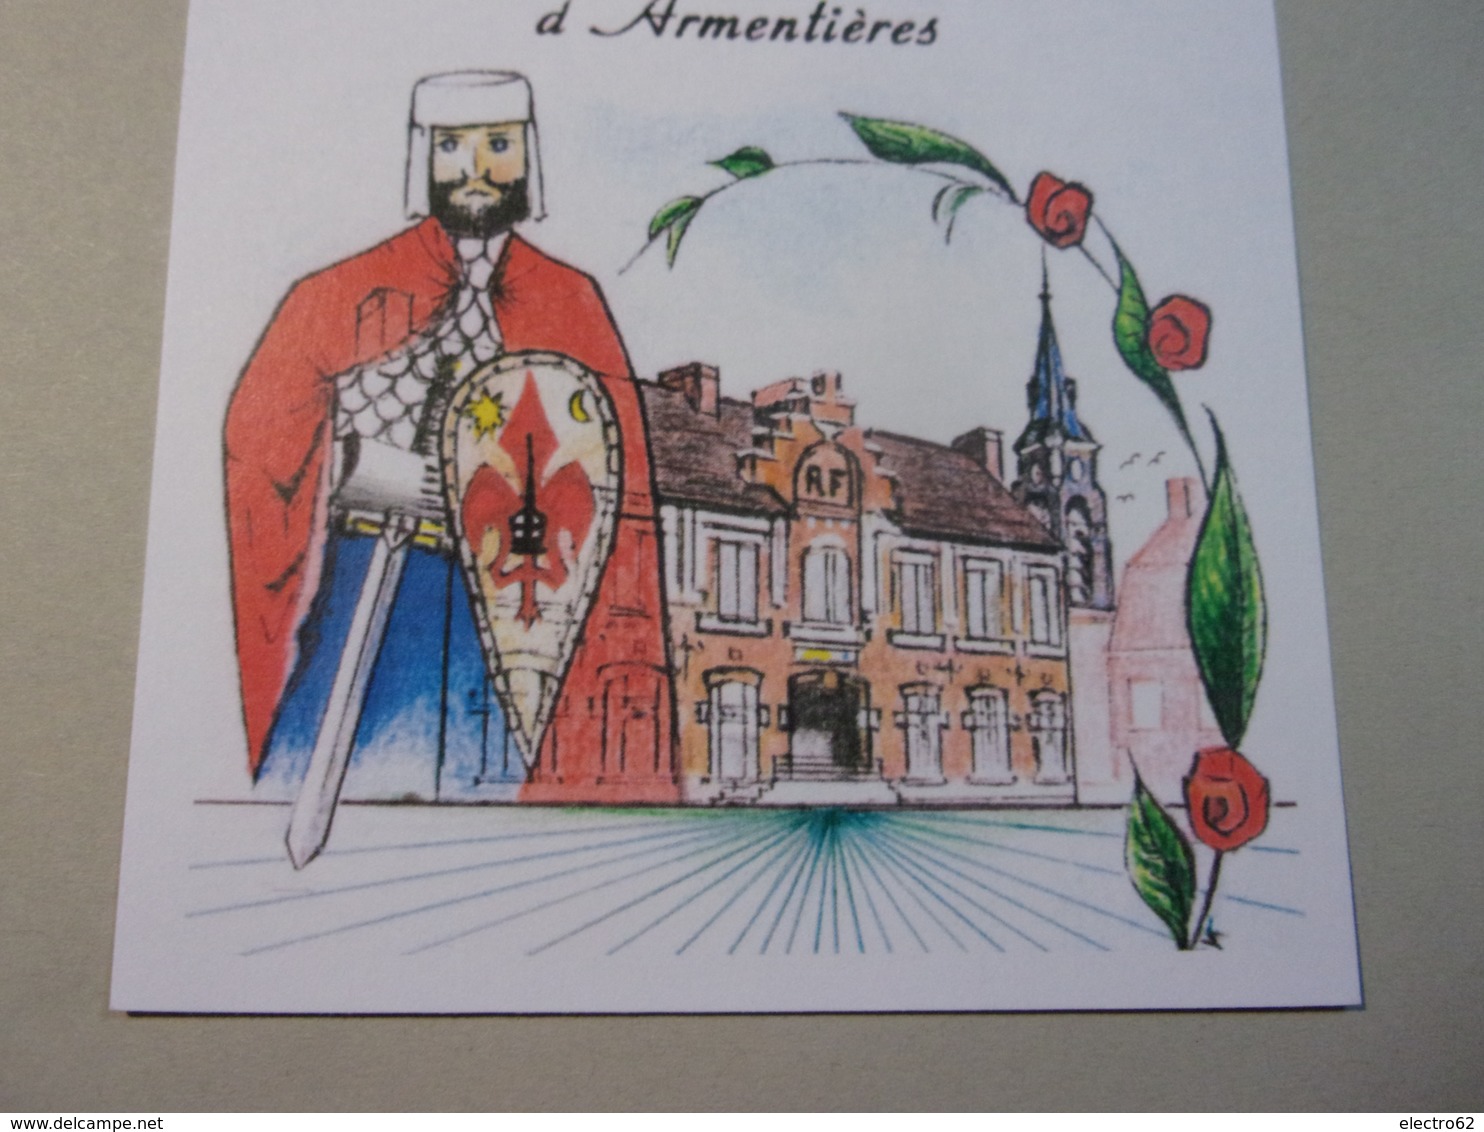 Carte Postale La Chapelle D'Armentières, Géant Du Courtembus, Dessin Alain Vandenhende - Carnaval